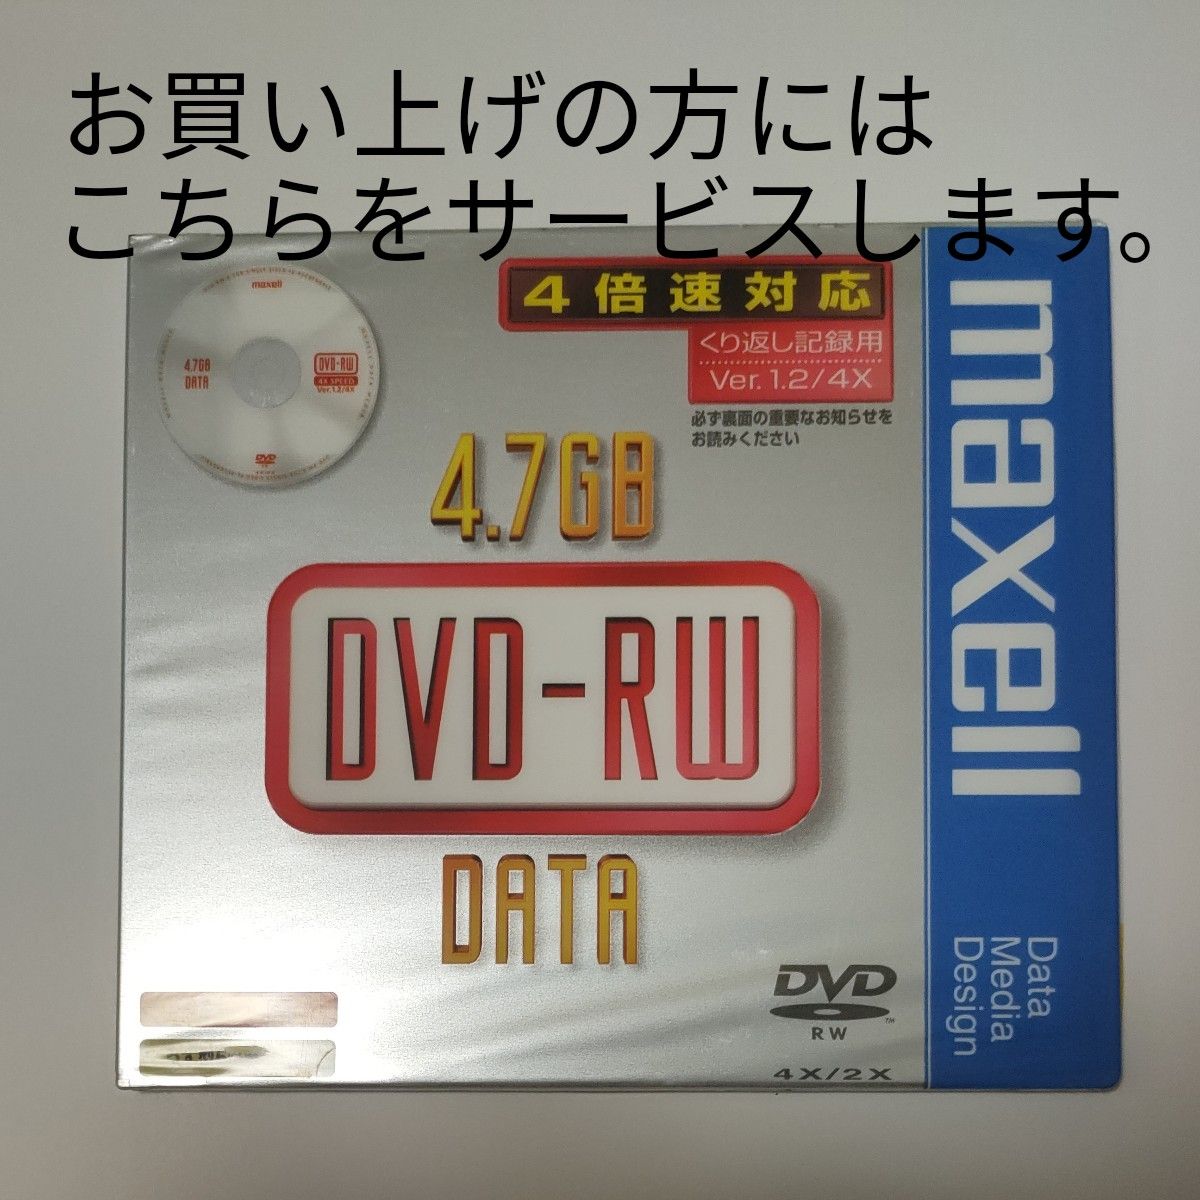 TDK DVD-R　超硬　録画用120分